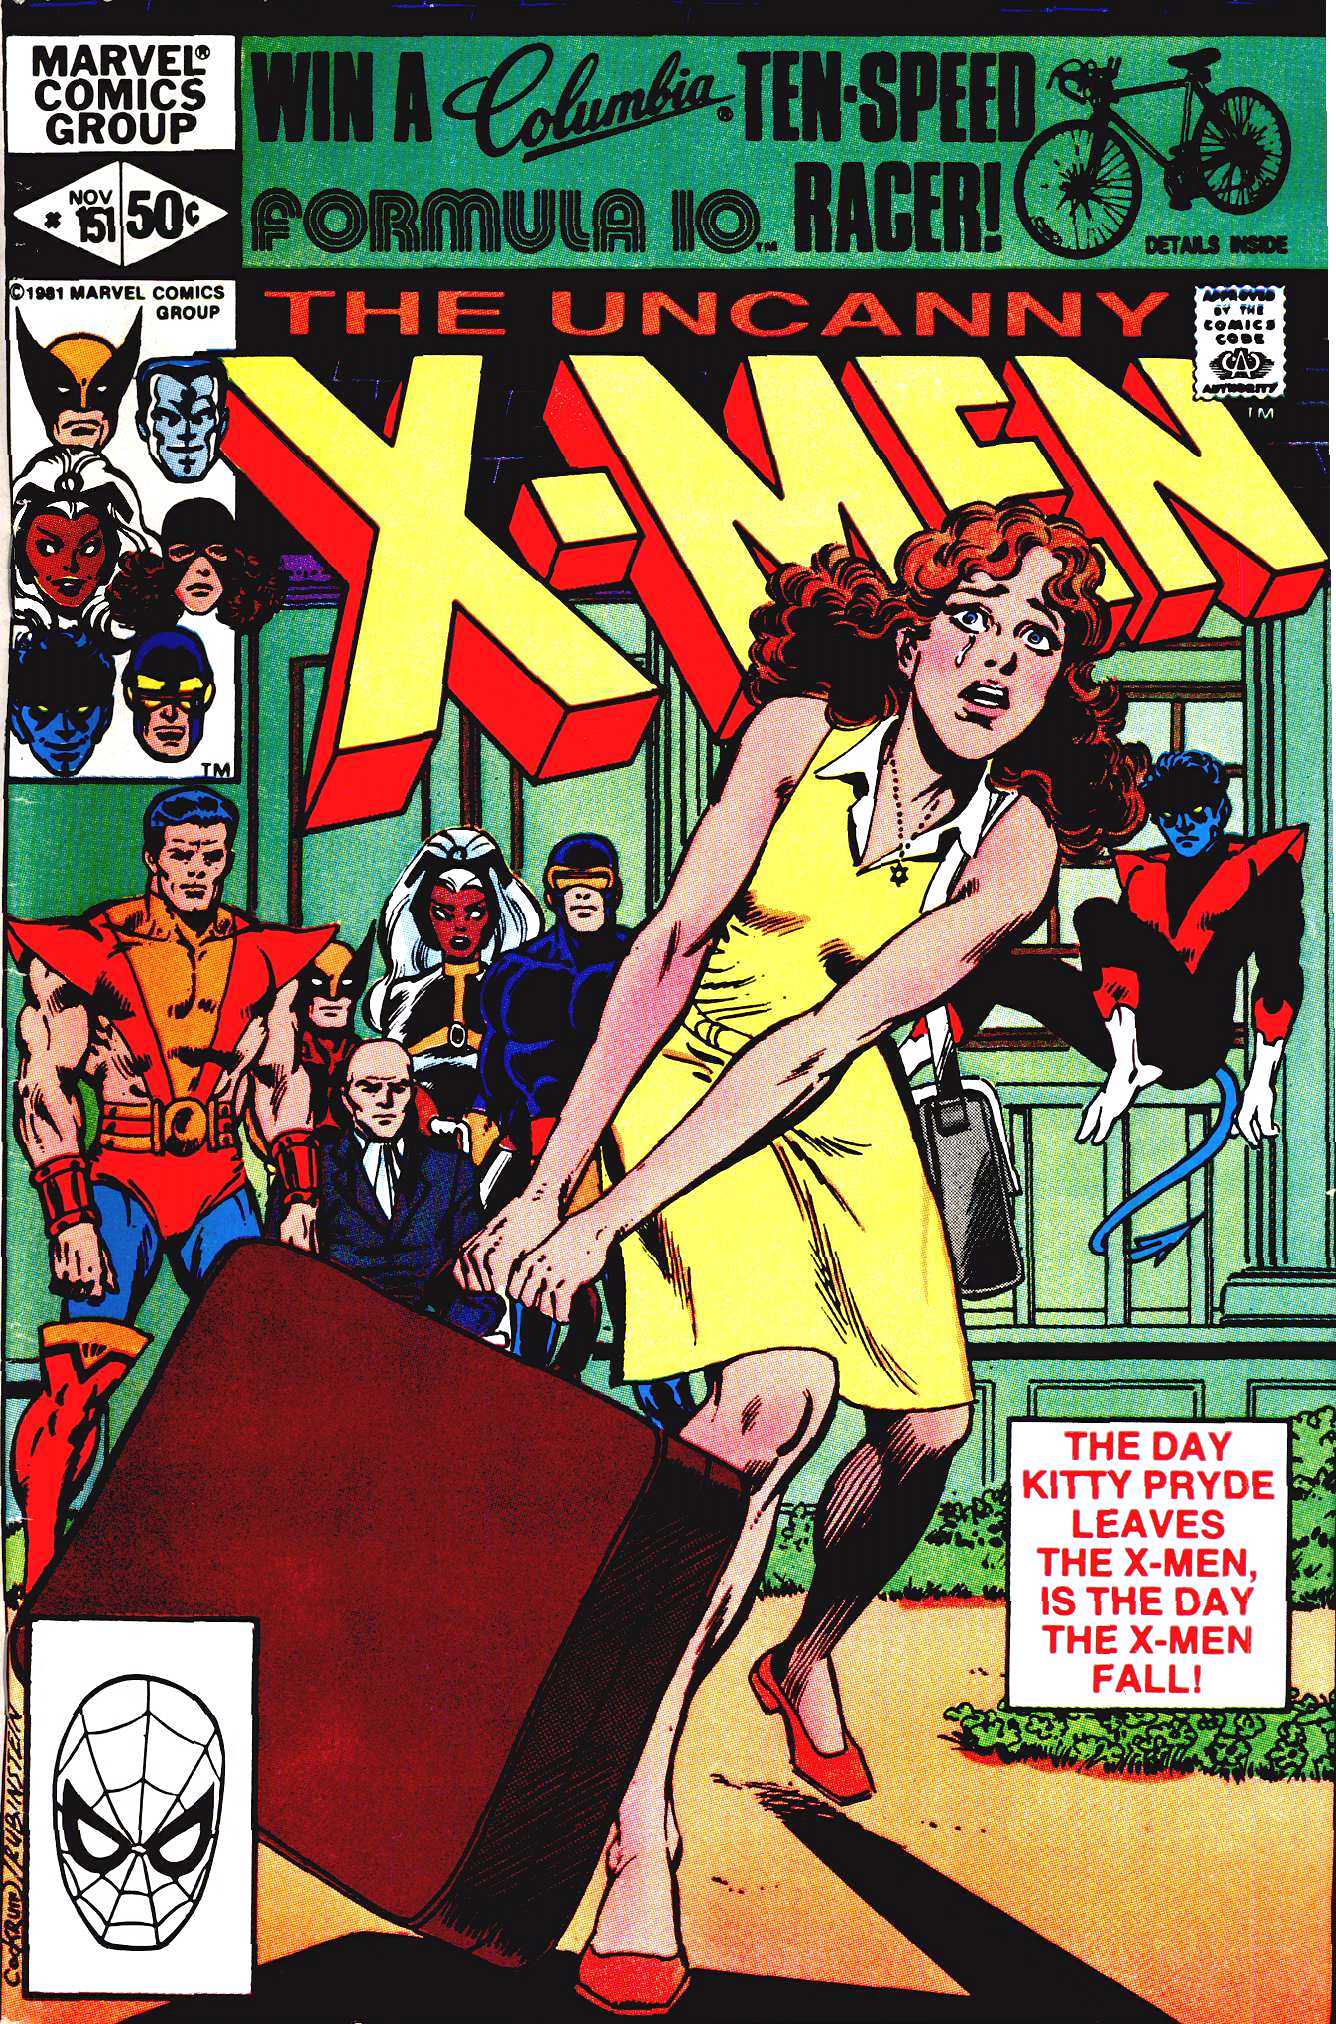 Uncanny X-Men Vol. 1 #151